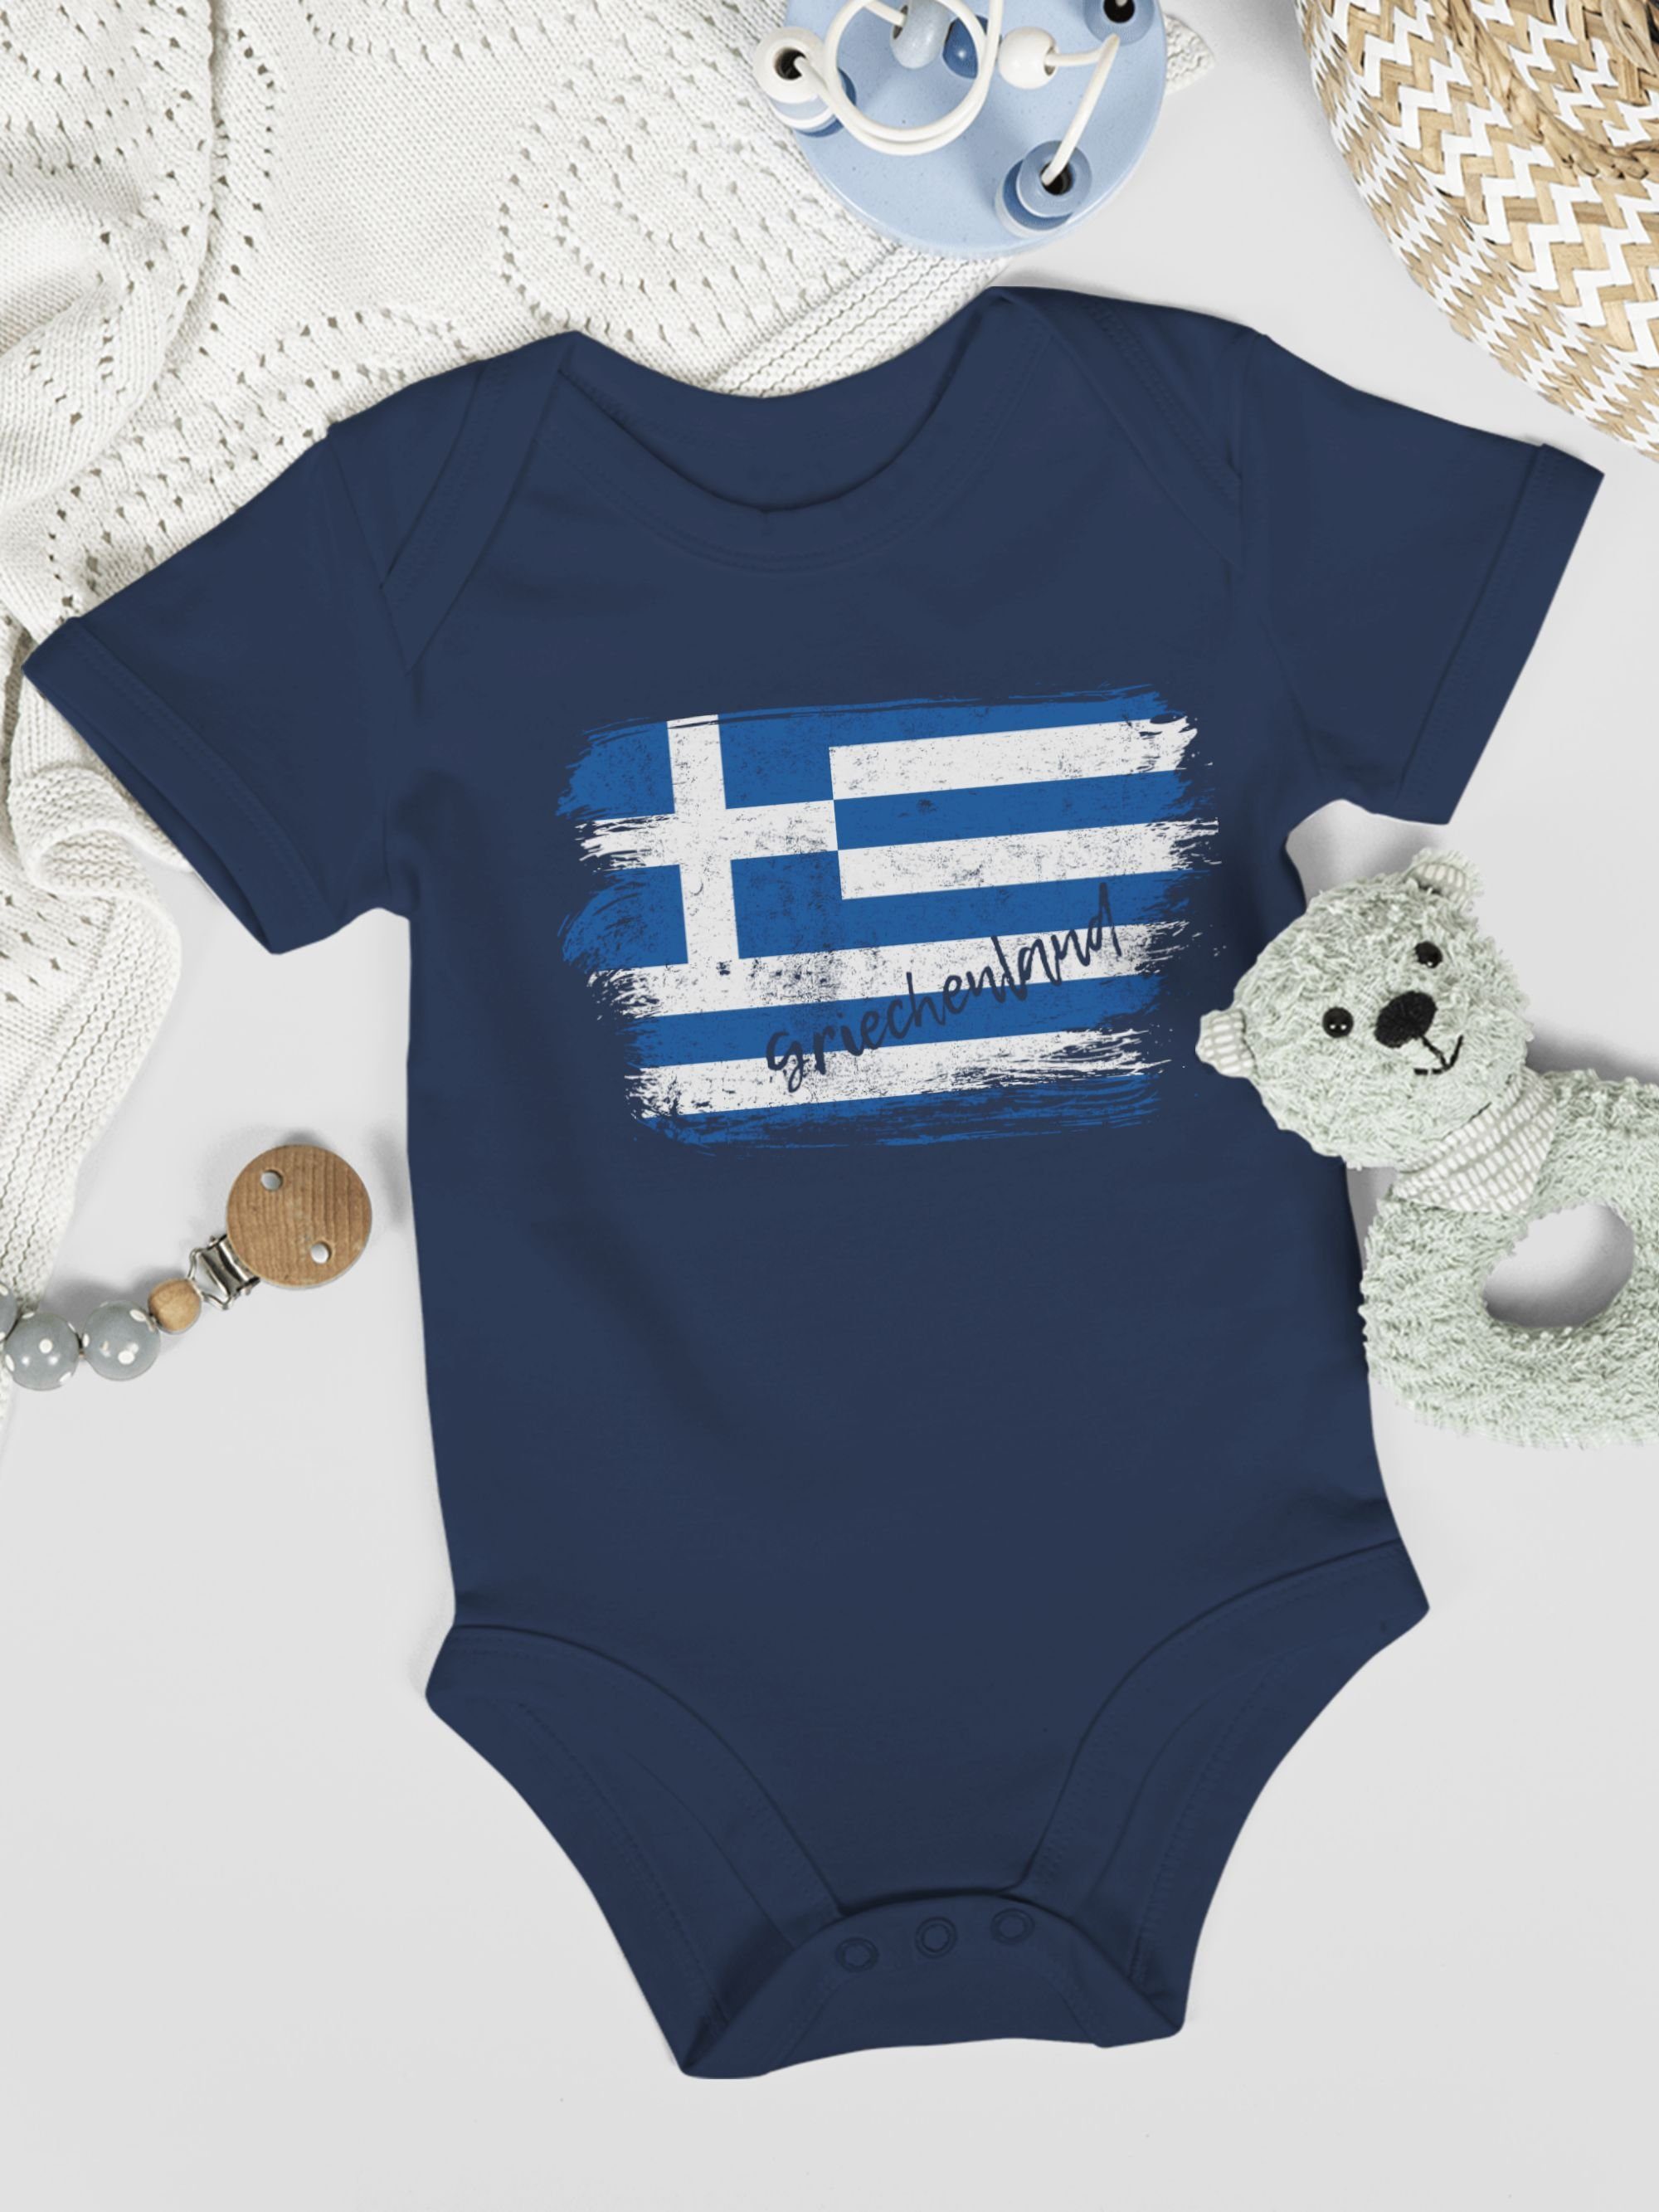 Griechenland Vintage Shirtracer 2 Wappen Navy Shirtbody Baby Blau Länder